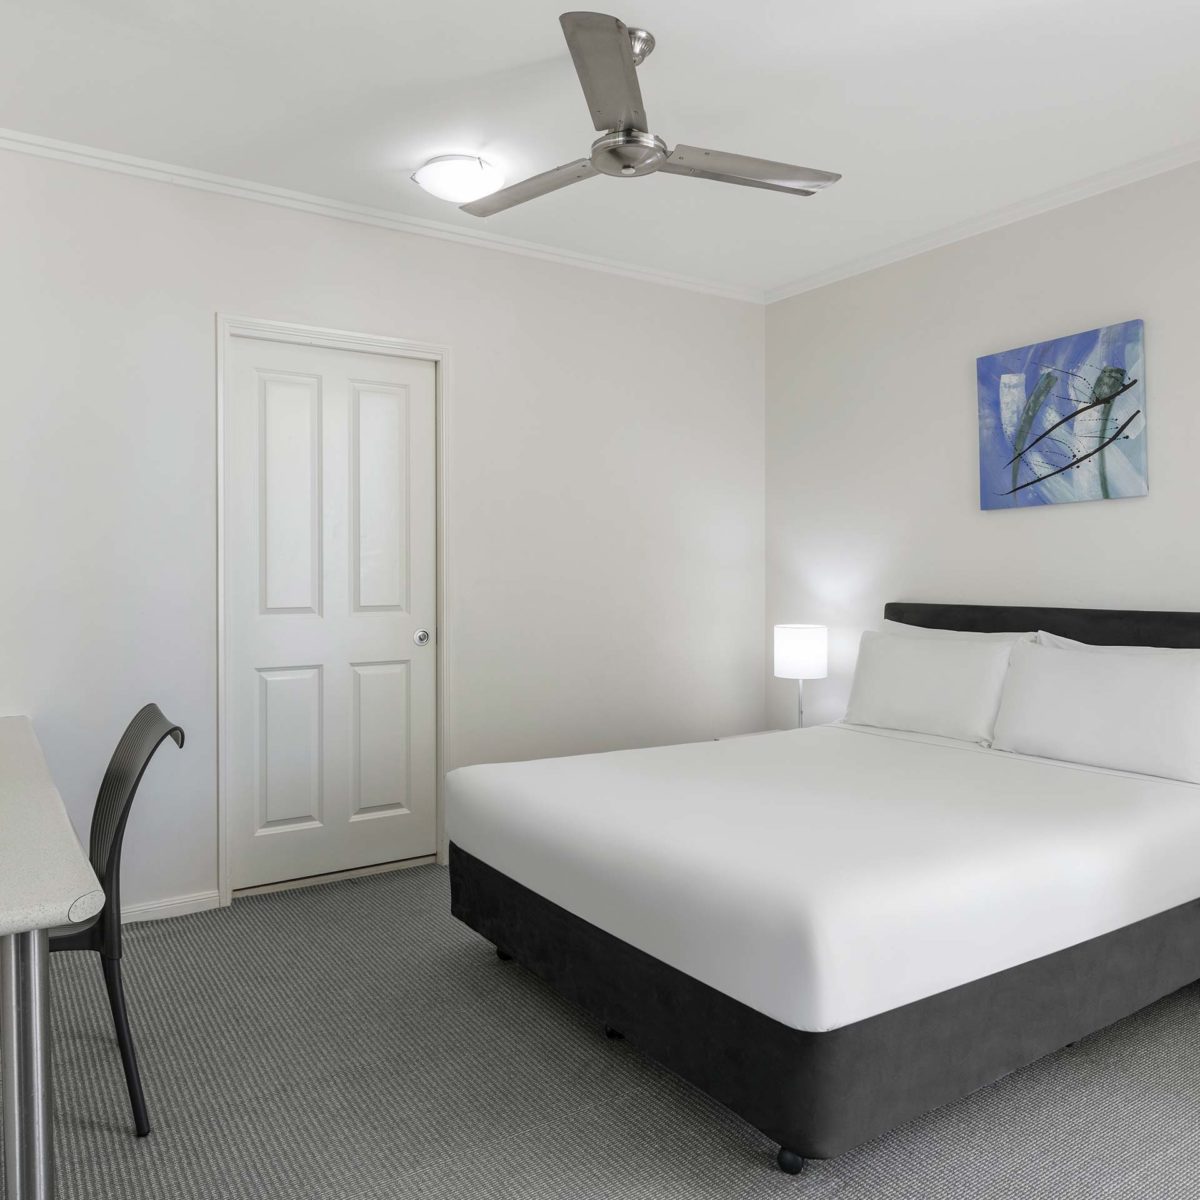 Standard Hotel Room Queen Bed